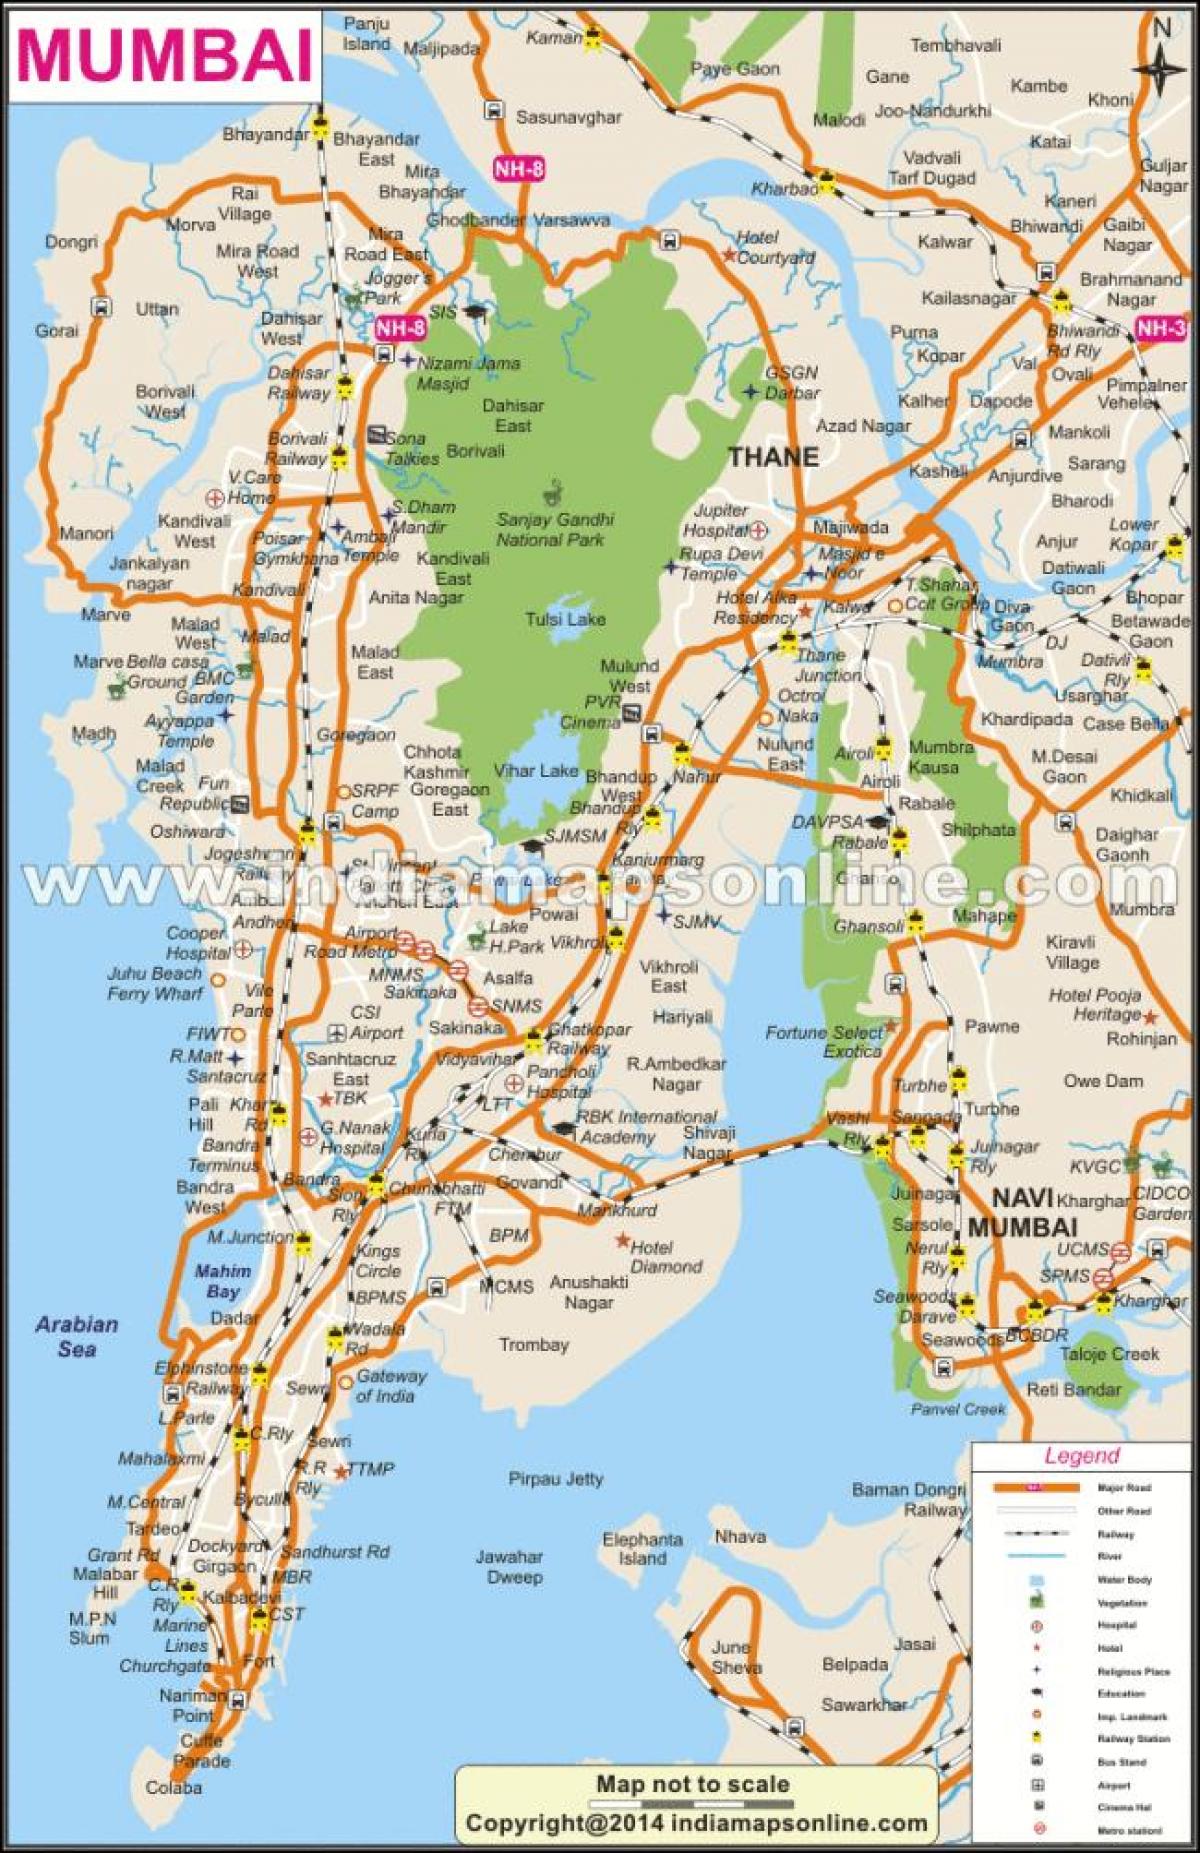 fullt kort af Mumbai